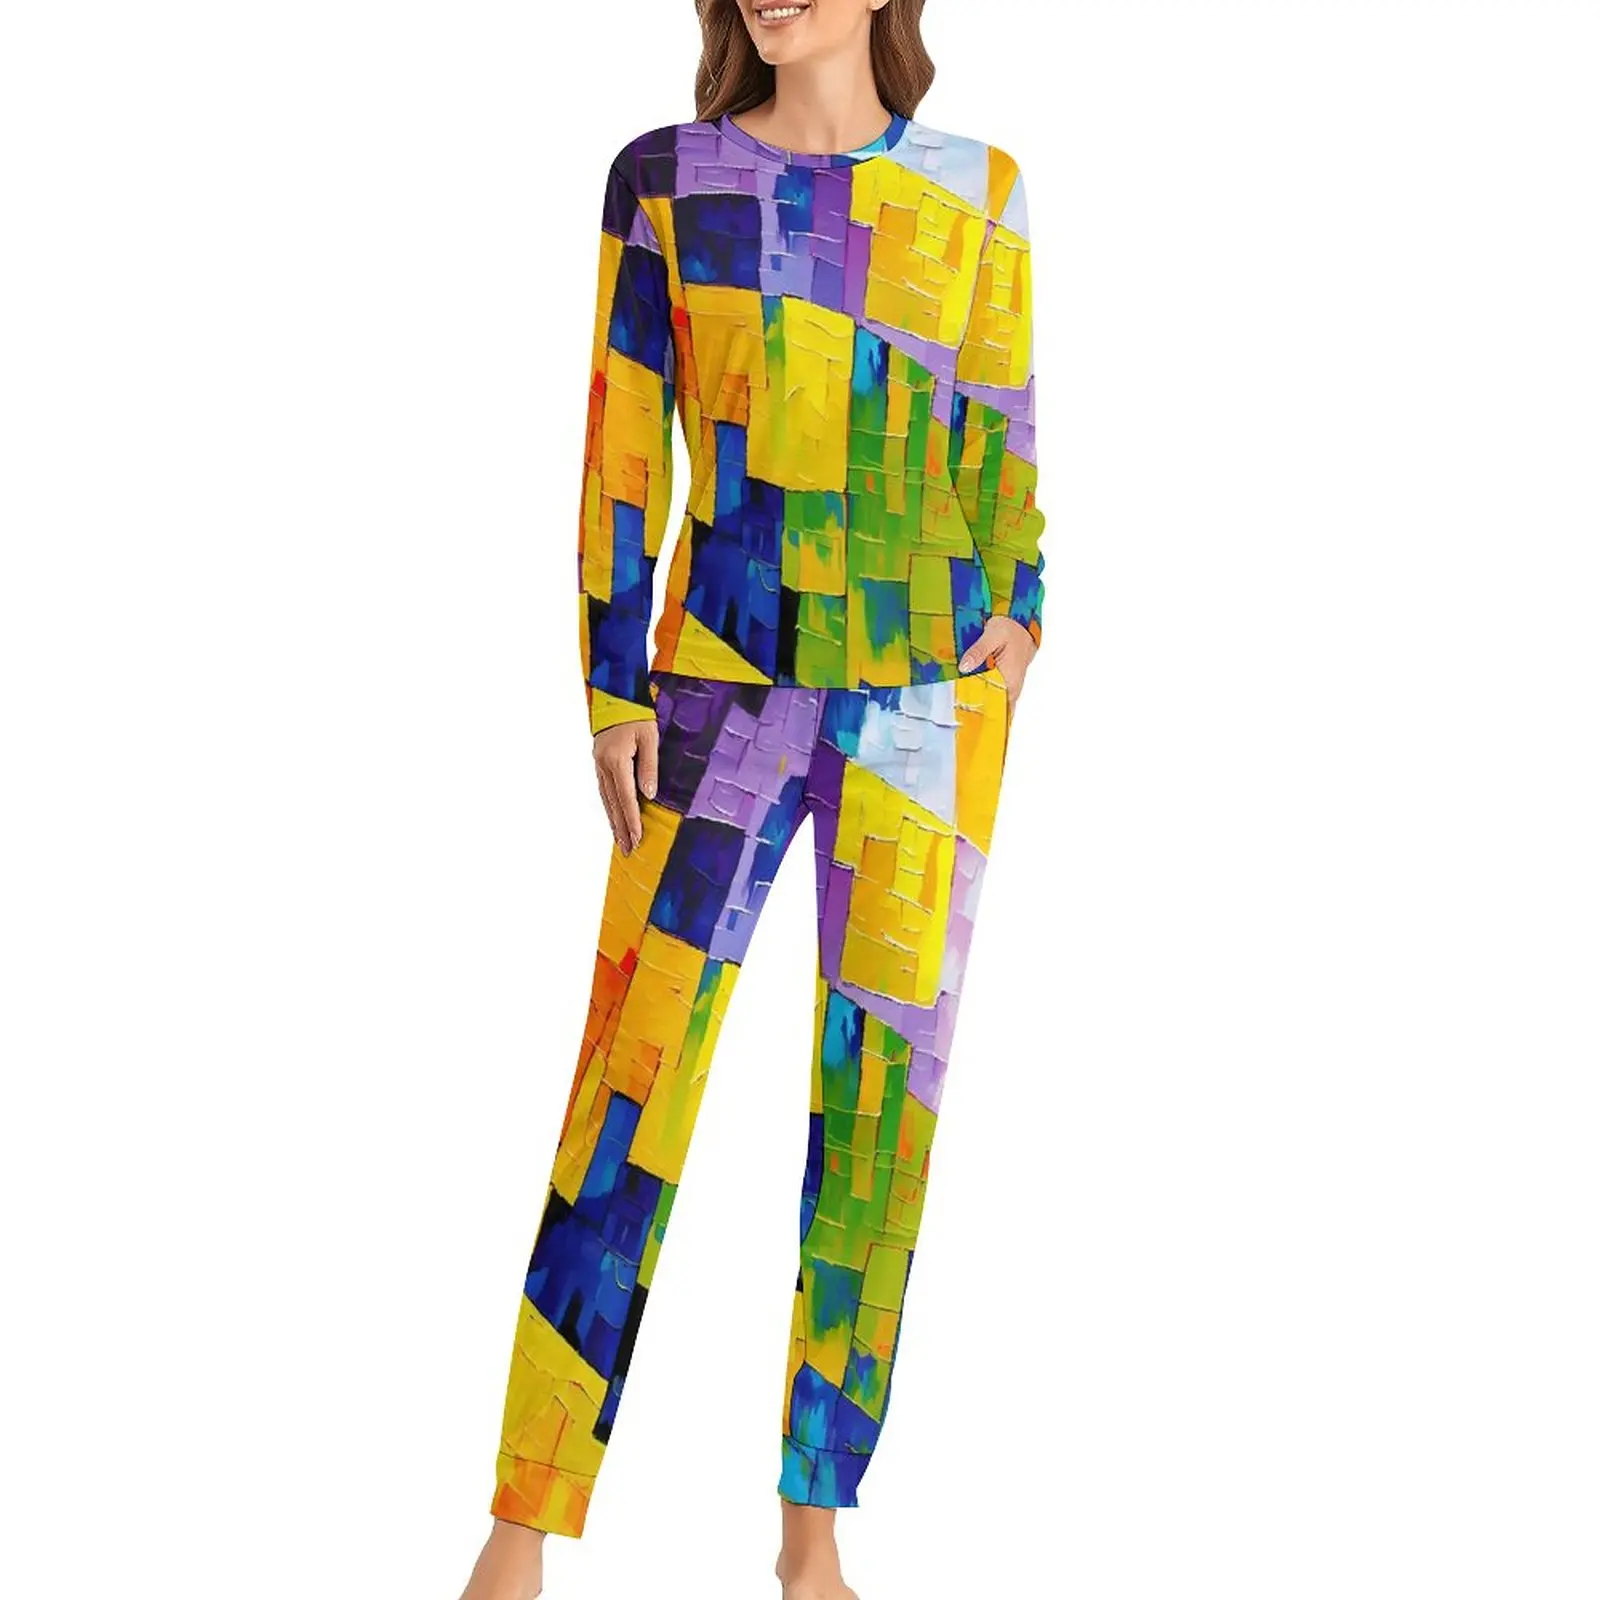 

Пижама с абстрактным геометрическим принтом, 2 предмета, домашний костюм для отдыха, женская теплая ночная одежда большого размера с длинными рукавами